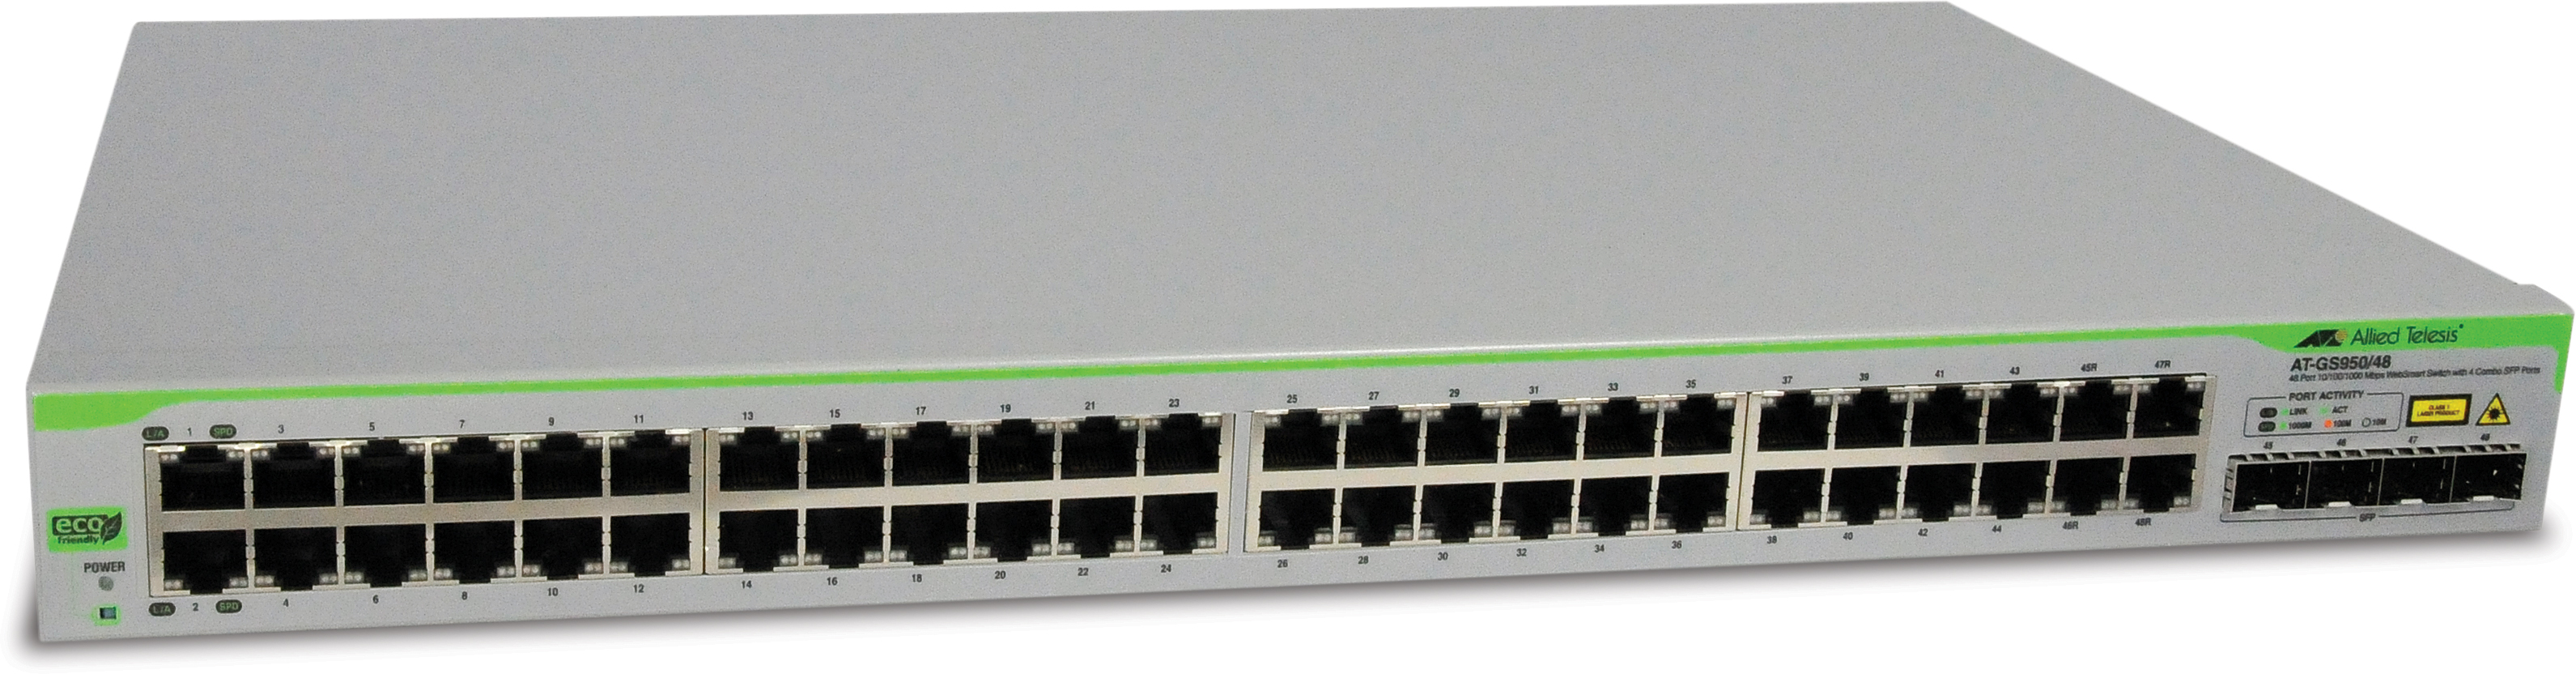 Switch Allied Telesis GS950 48 Gigabit, 4 SFP, L2 WebSmart